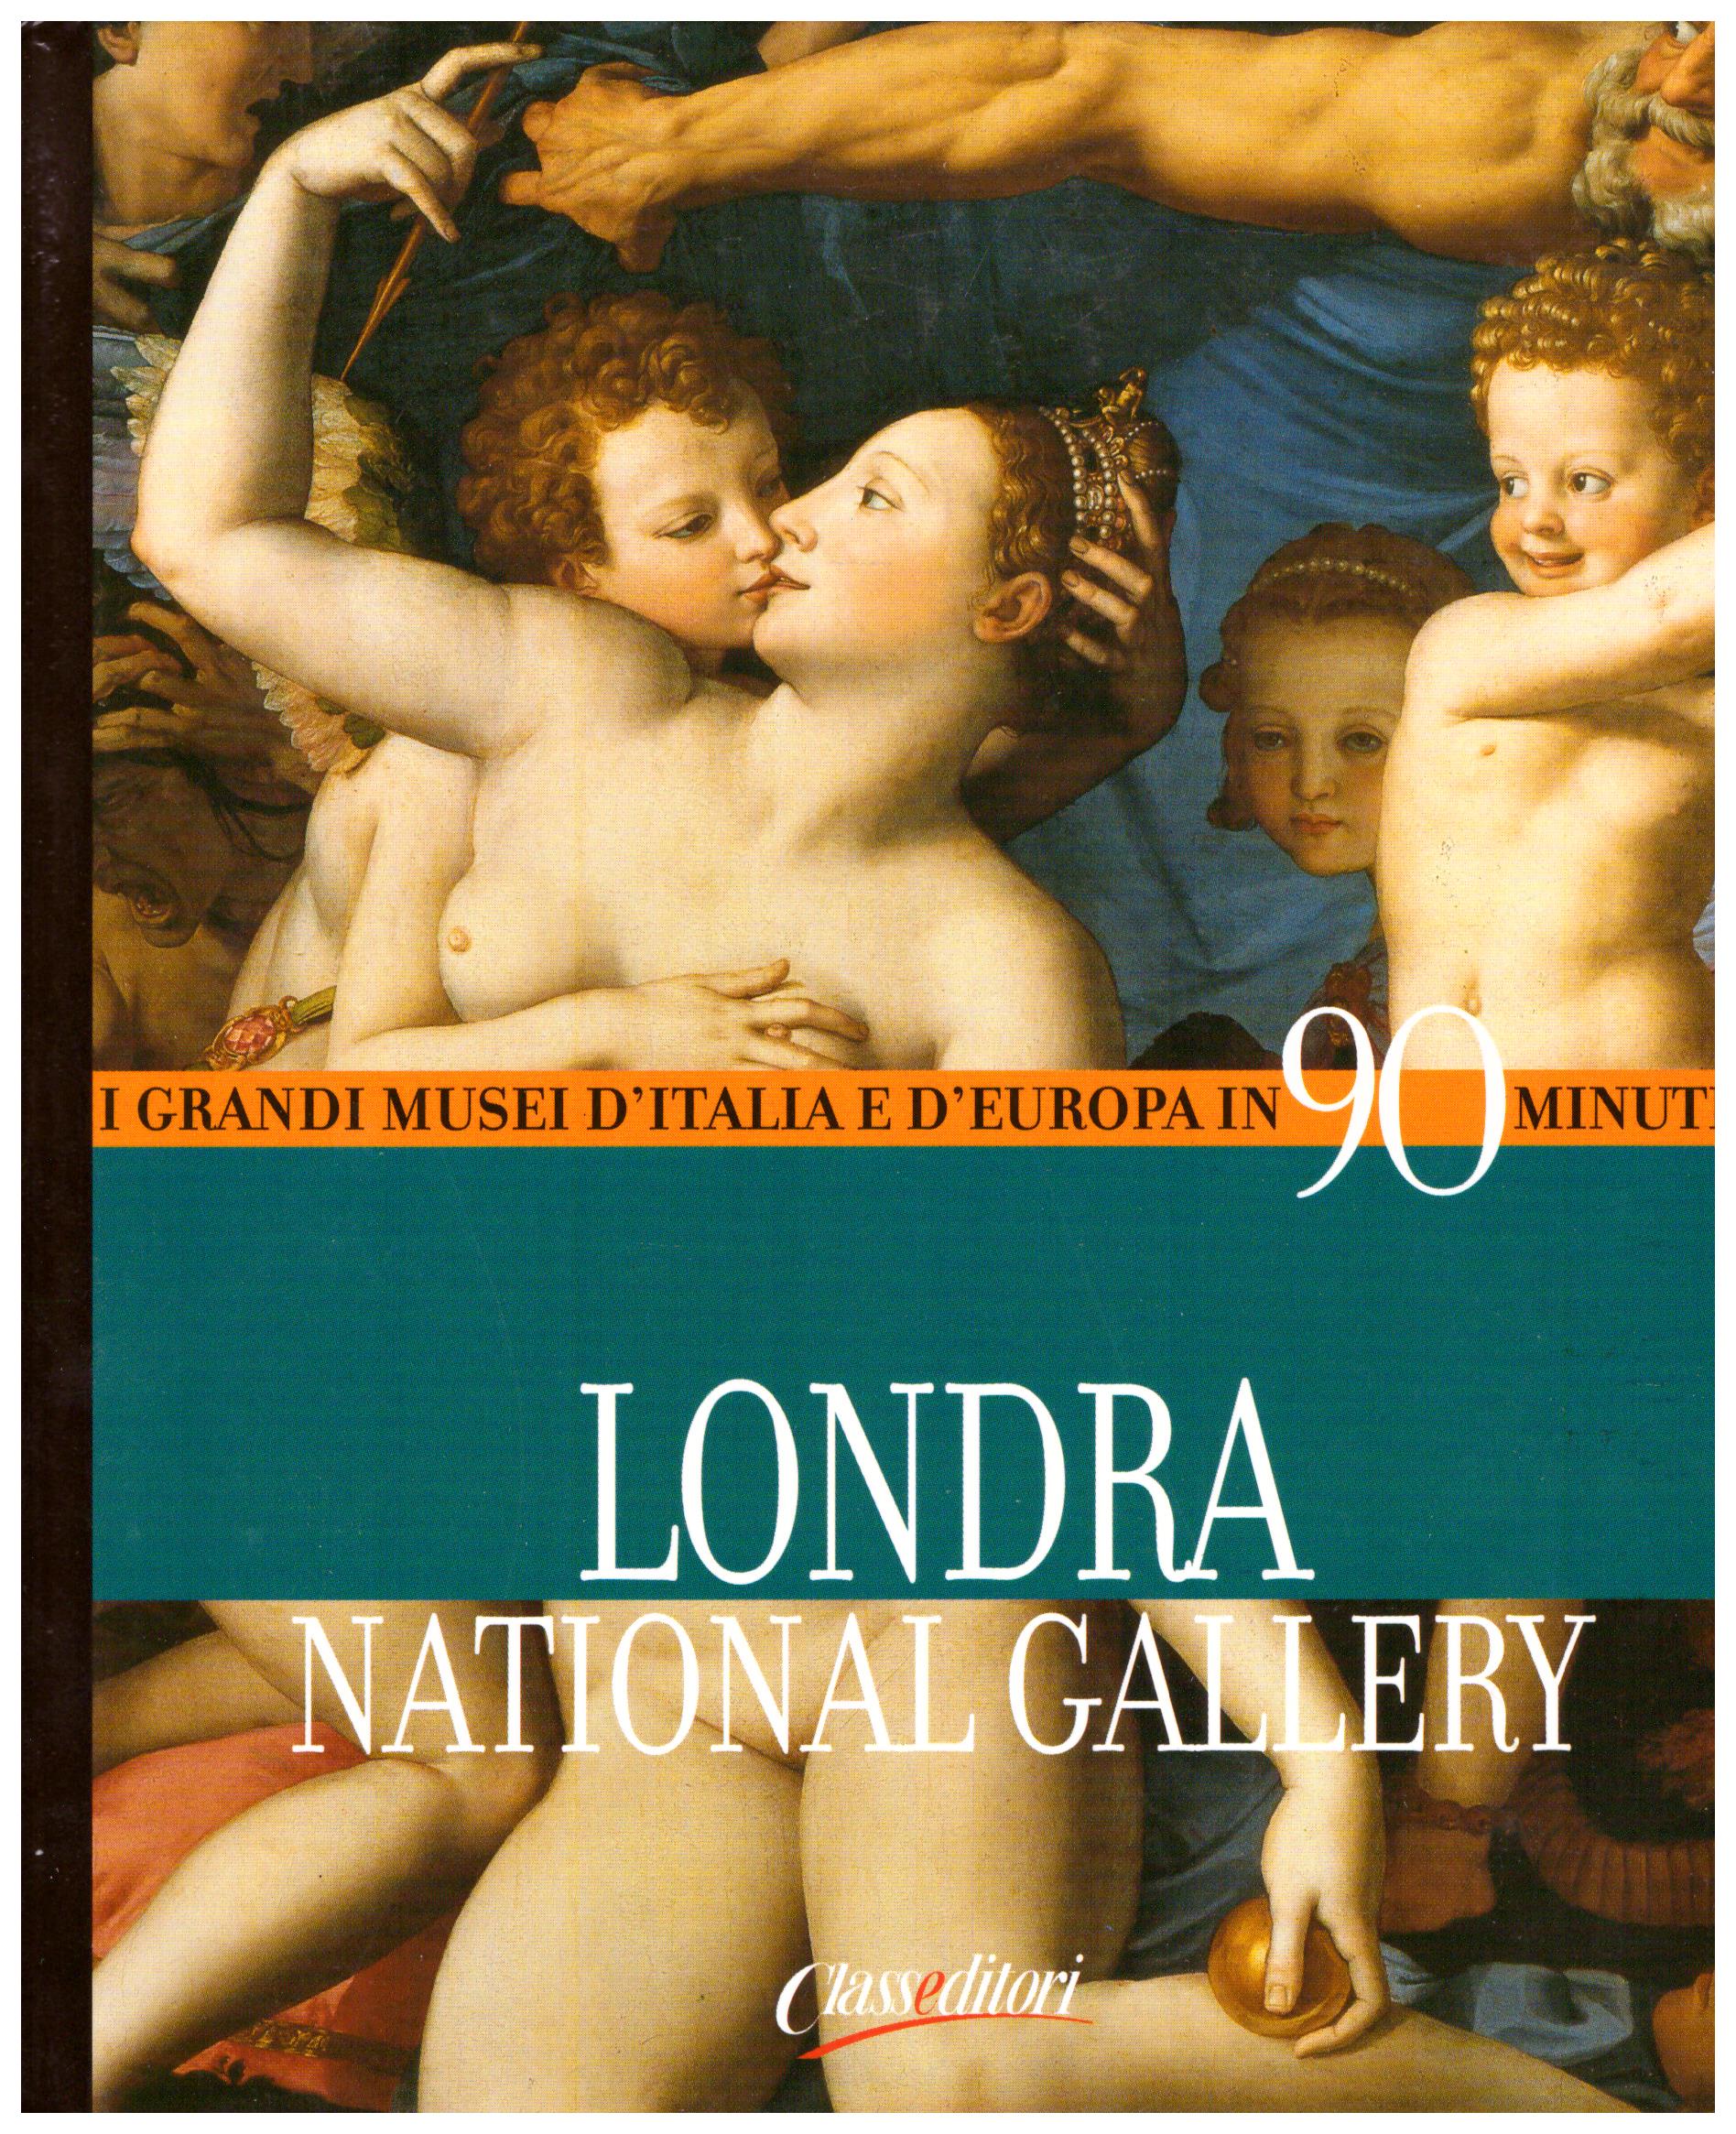 Titolo: I grandi musei d'italia e d'Europa in 90 minuti, Londra National Gallery Autore : AA.VV.  Editore: class editori